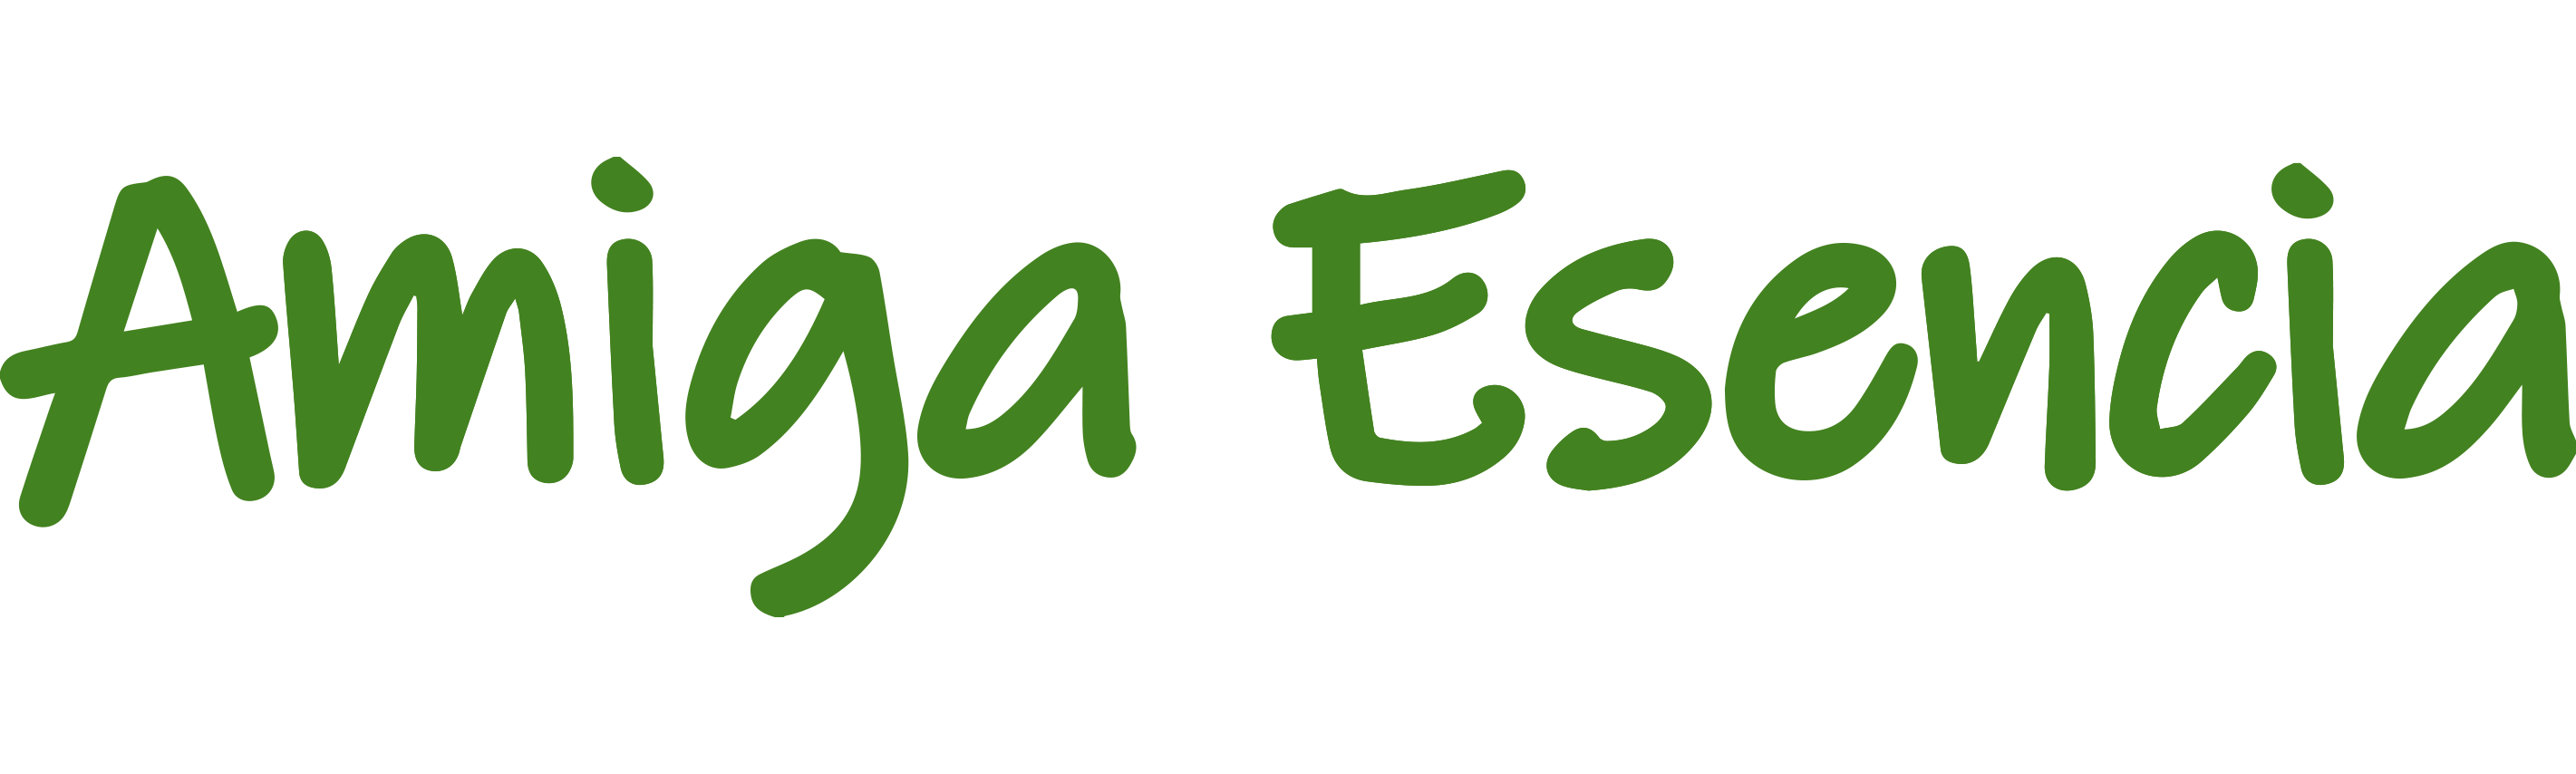 Amiga esencia logotipo verde